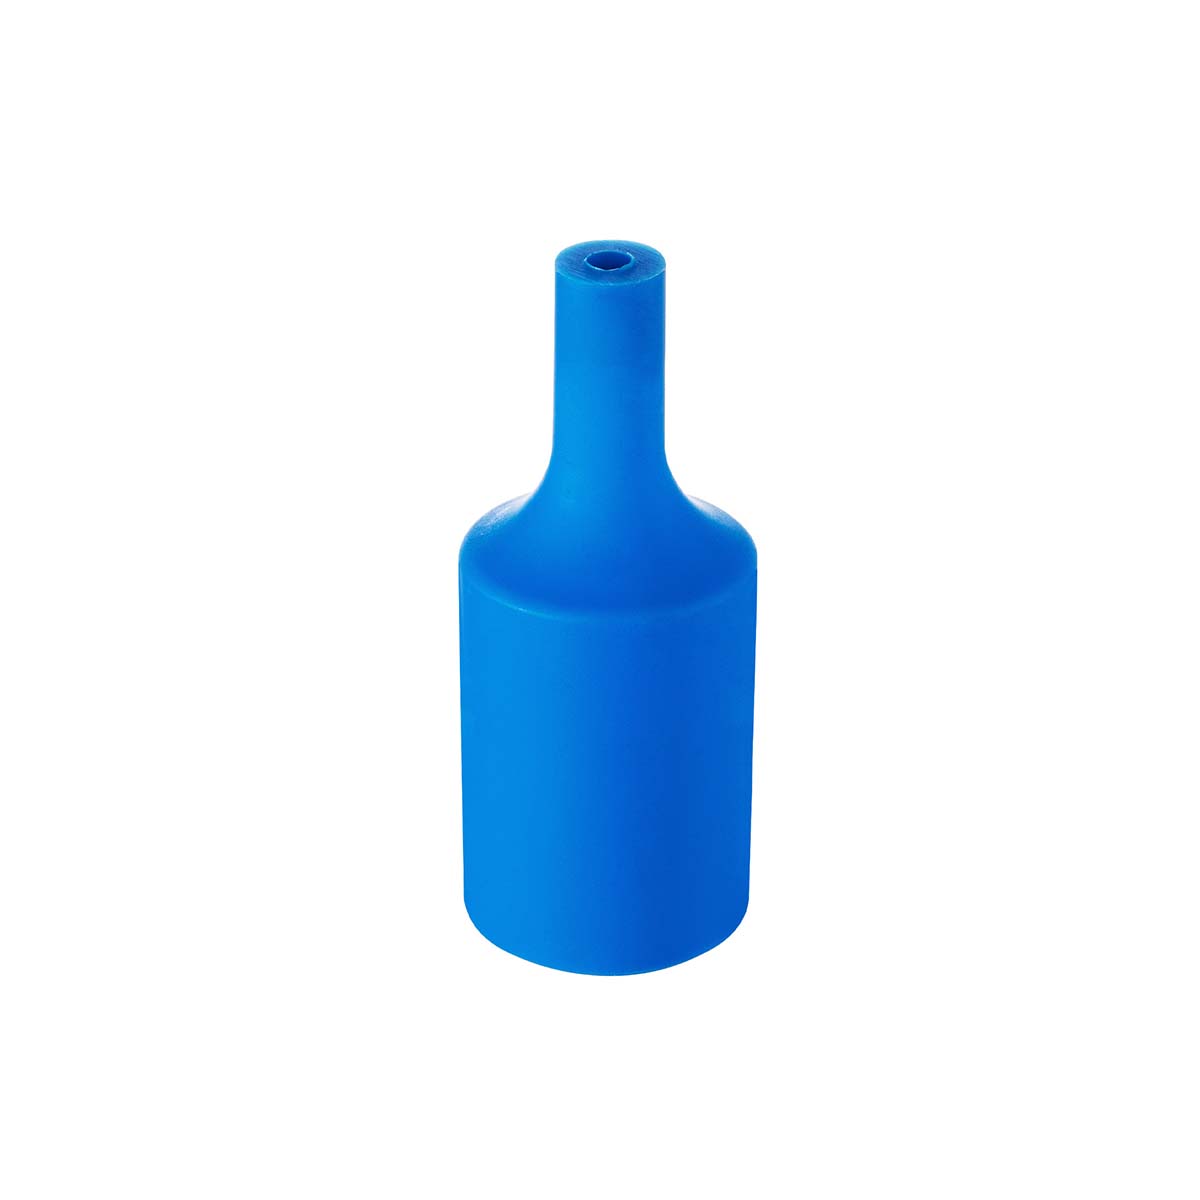 Tangla lighting - TLLH024BL - lamp holder silicon - E27 - bottle - blue